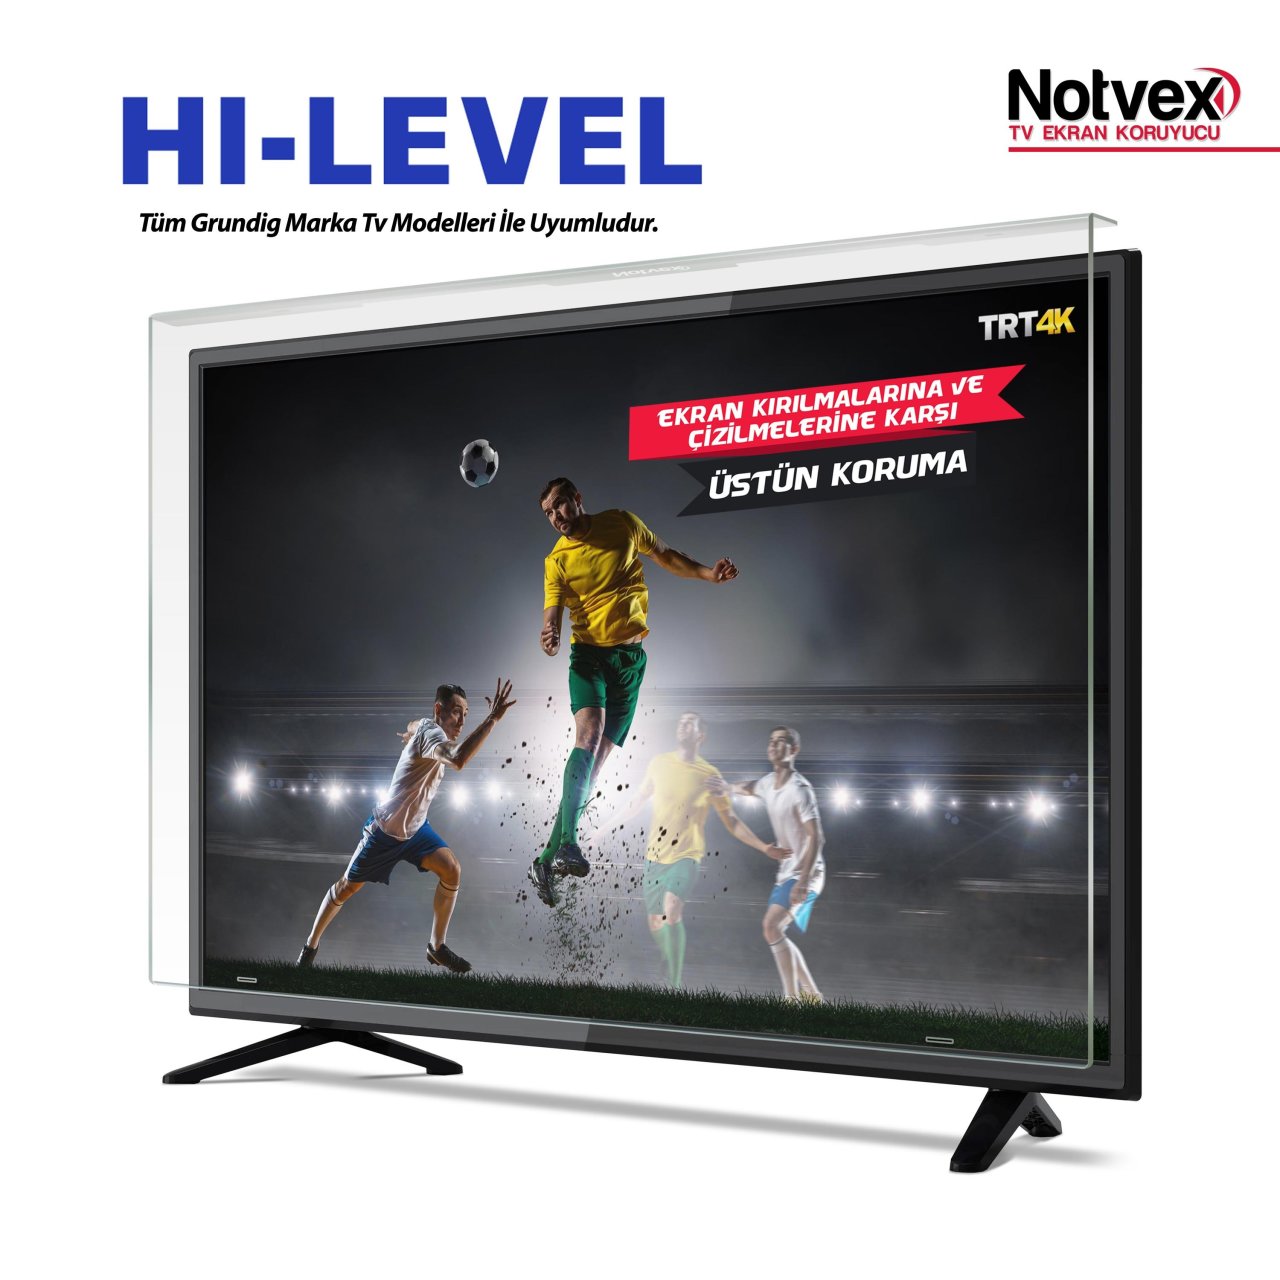 Hi-Level 39HL560 Uyumlu TV Ekran Koruyucu